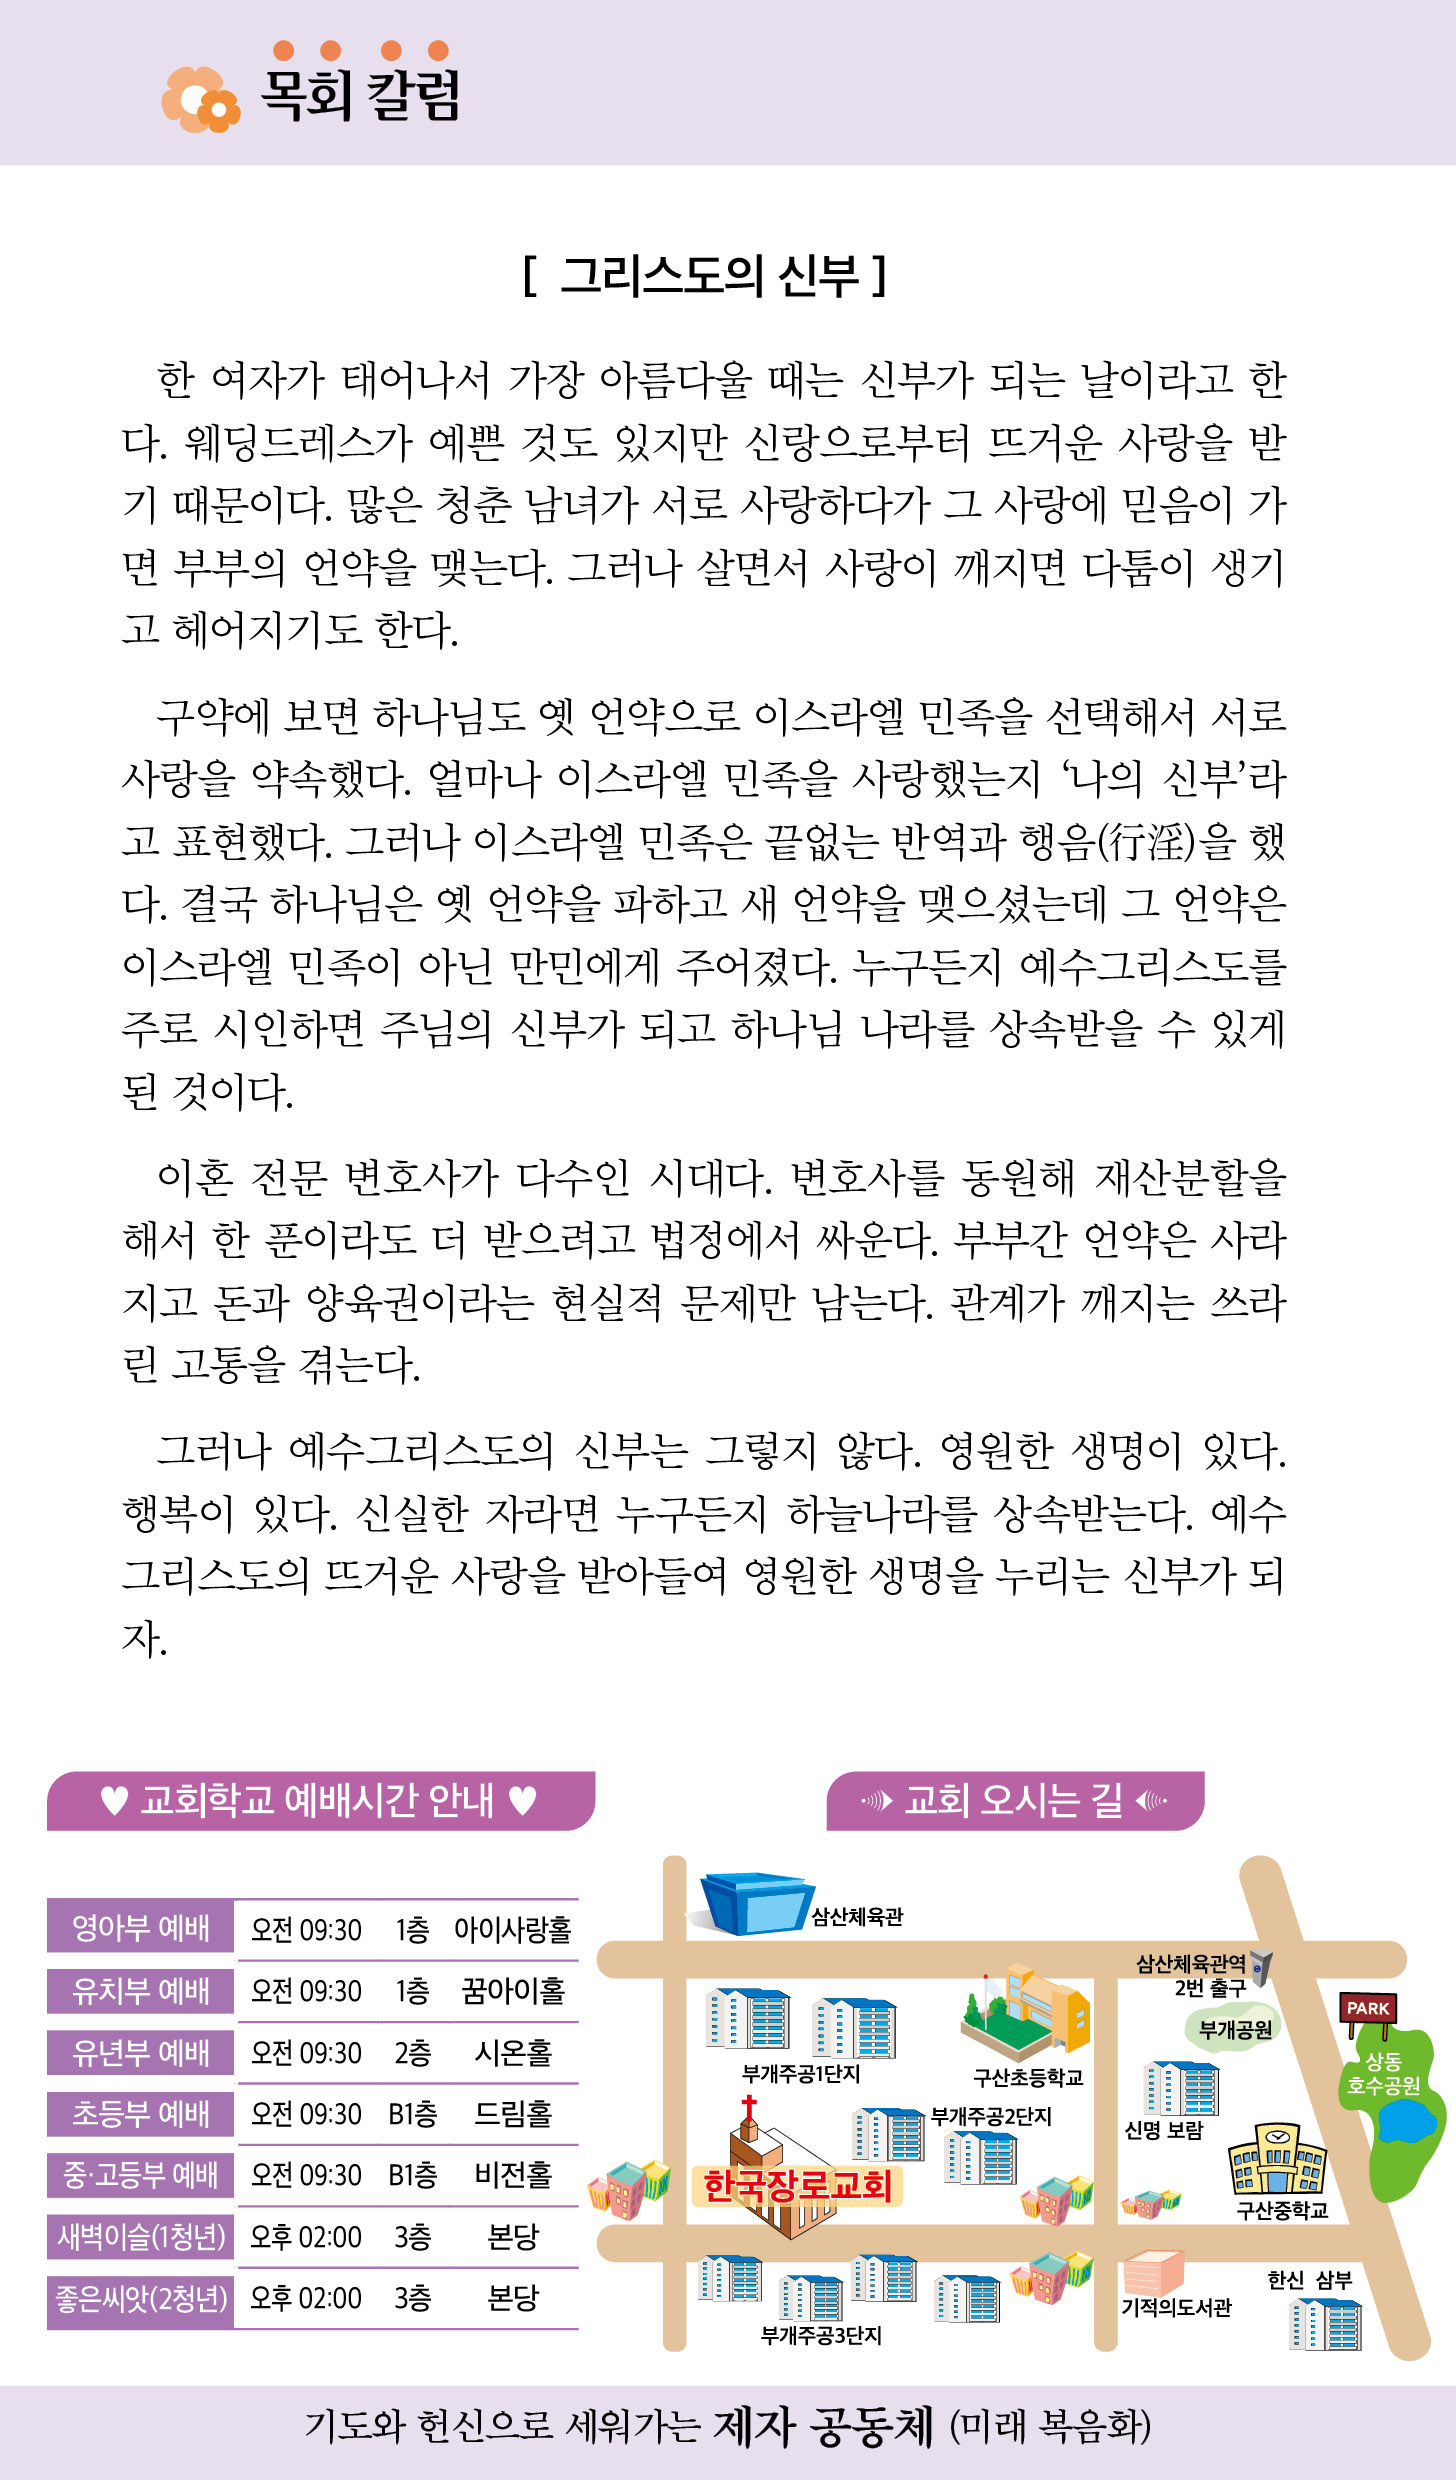 한국장로교회_9월주보_1주차_05.jpg